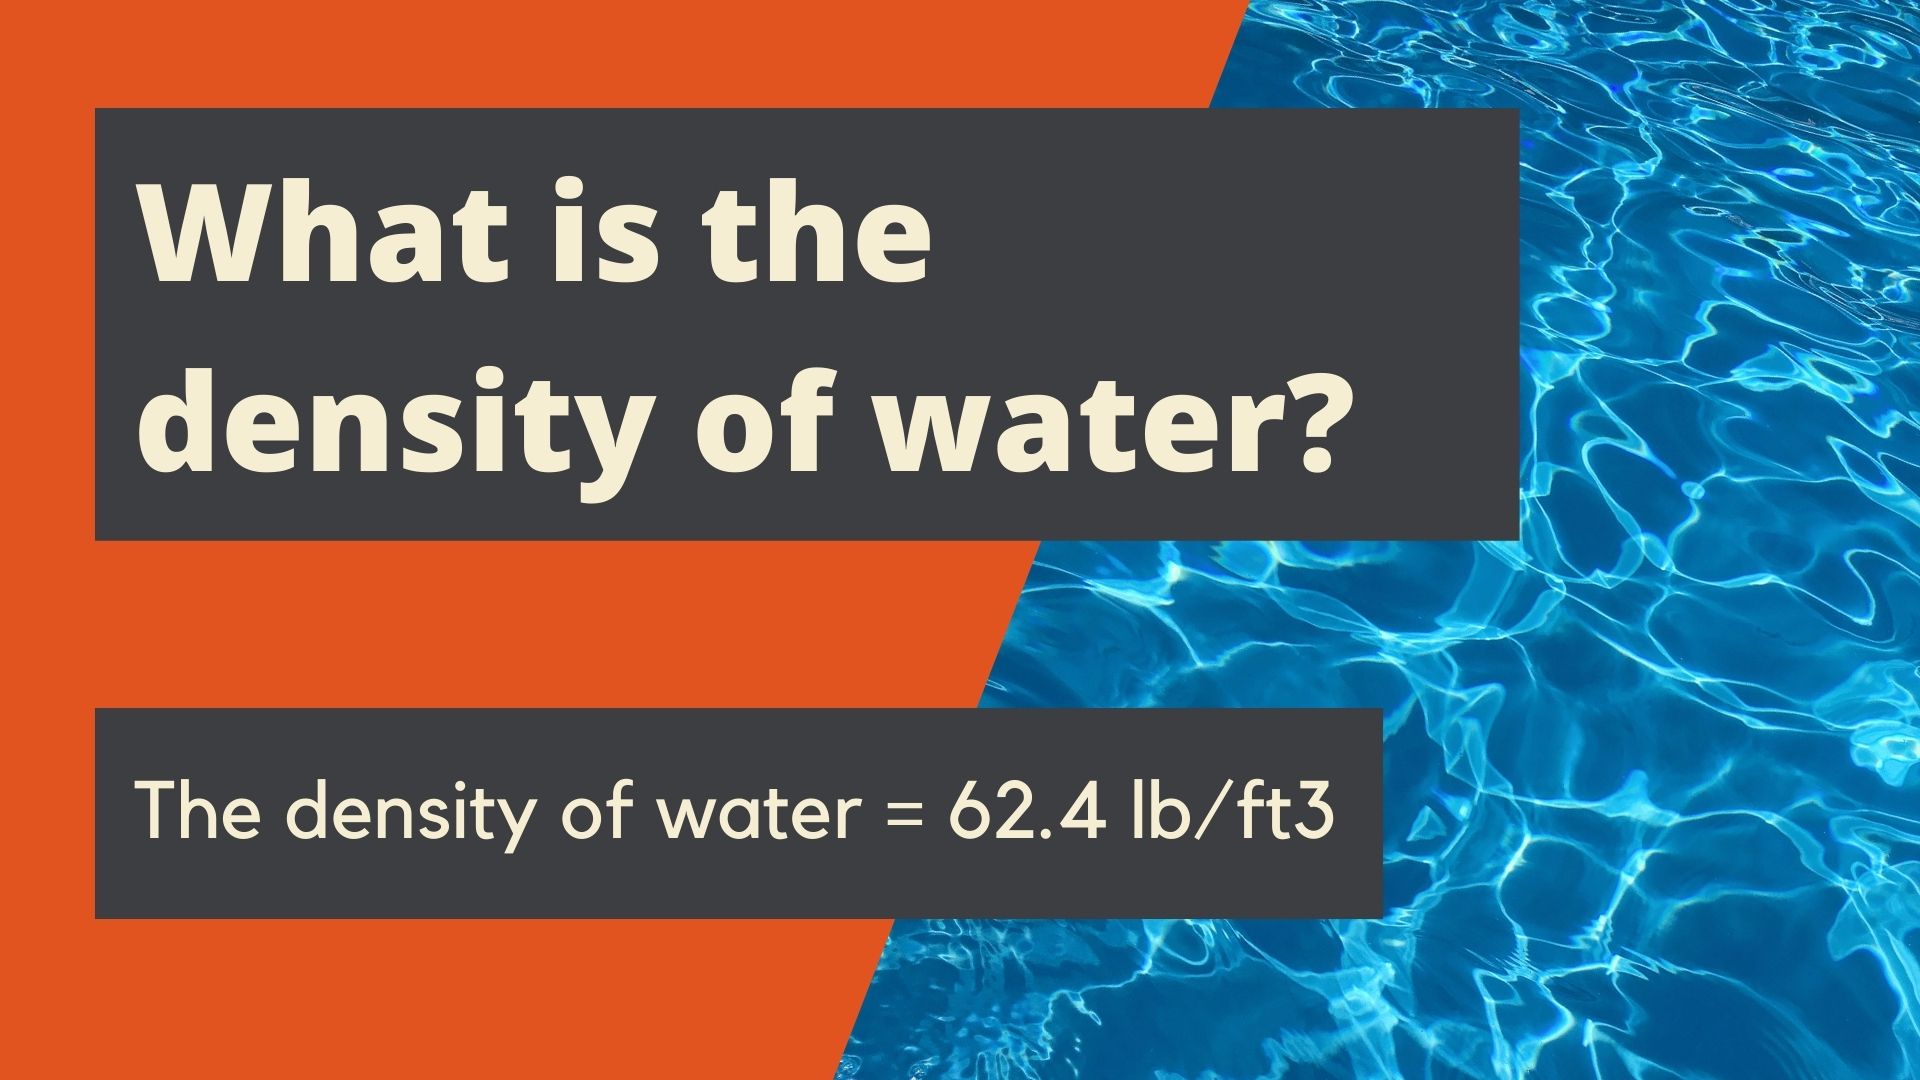 density of water lbgal